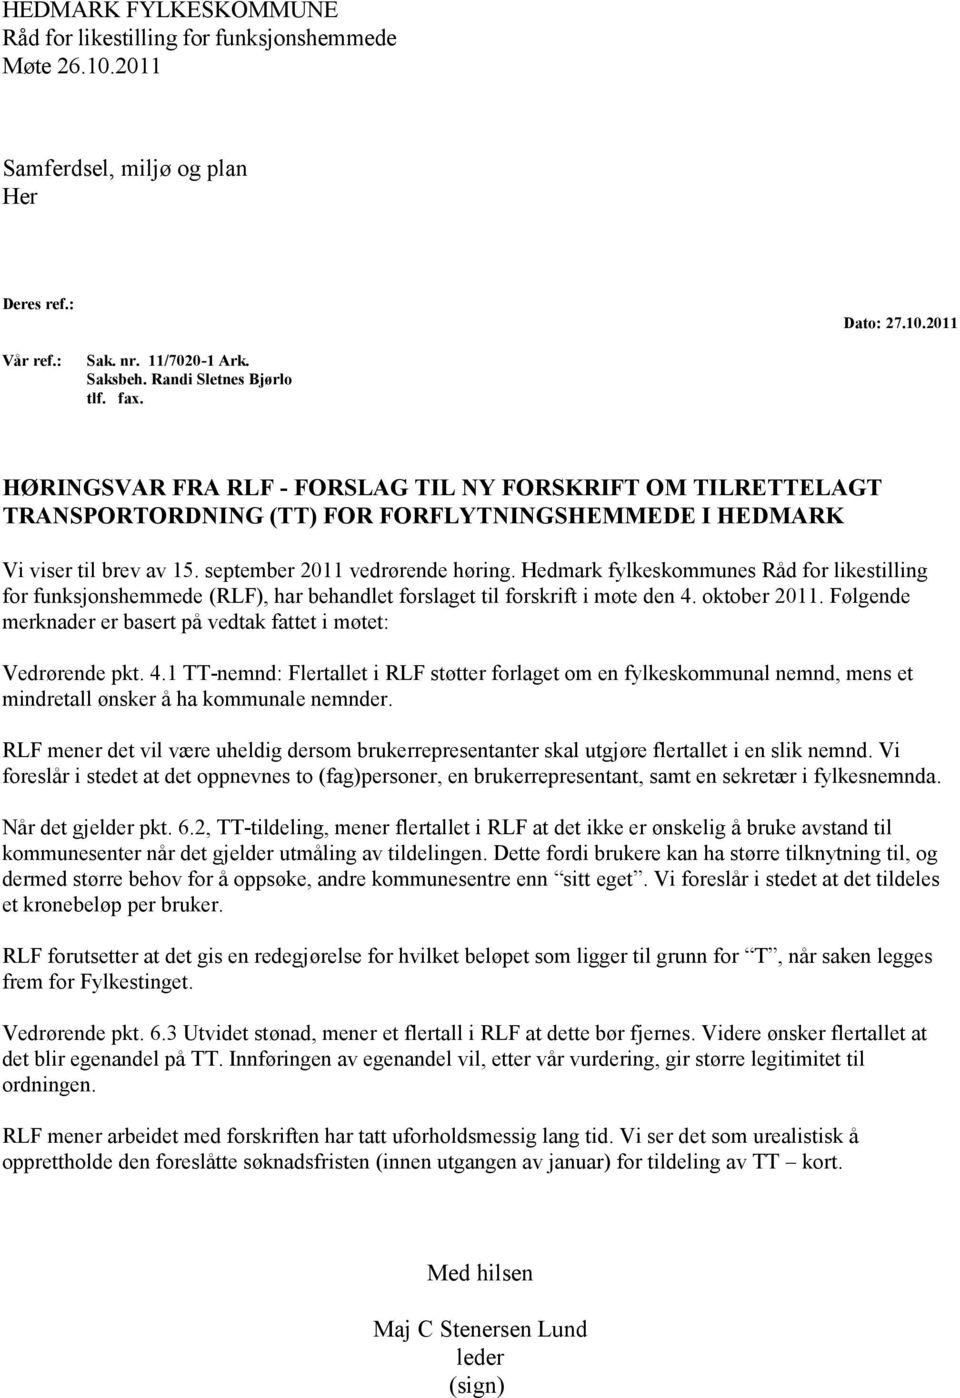 Hedmark fylkeskommunes Råd for likestilling for funksjonshemmede (RLF), har behandlet forslaget til forskrift i møte den 4. oktober 2011.